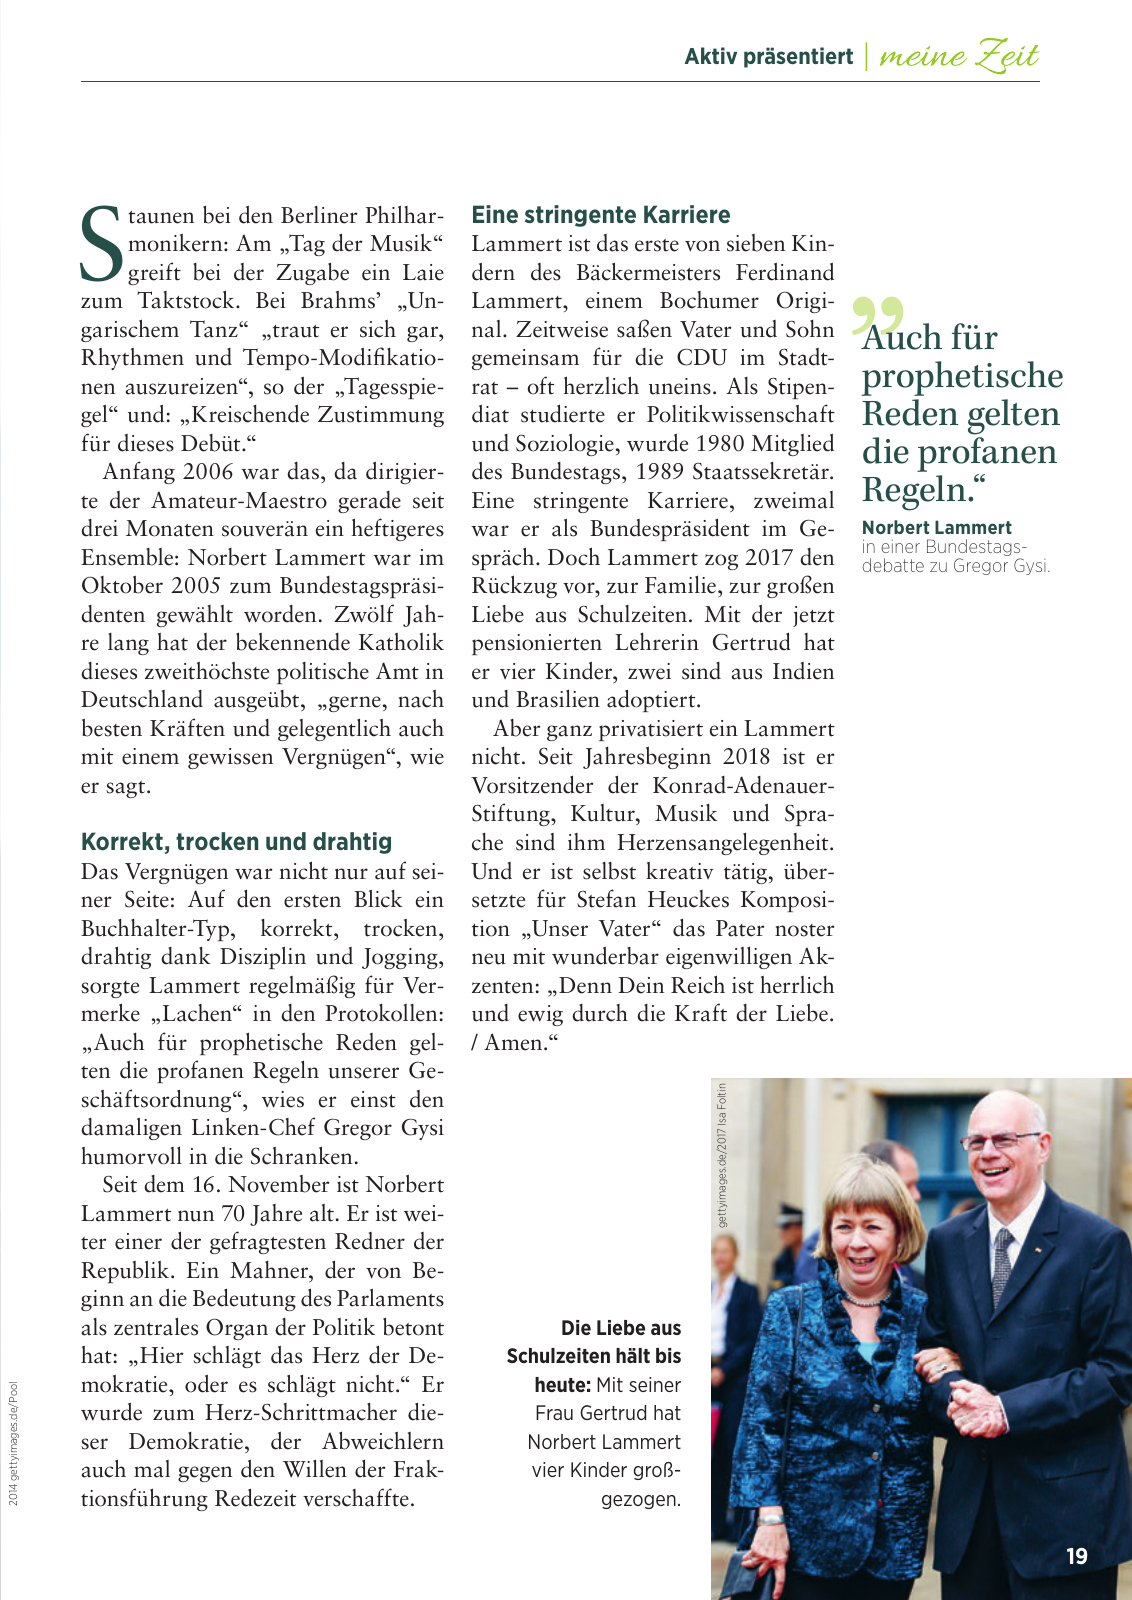 Vorschau 2018_GDA06_Frankfurt Seite 19